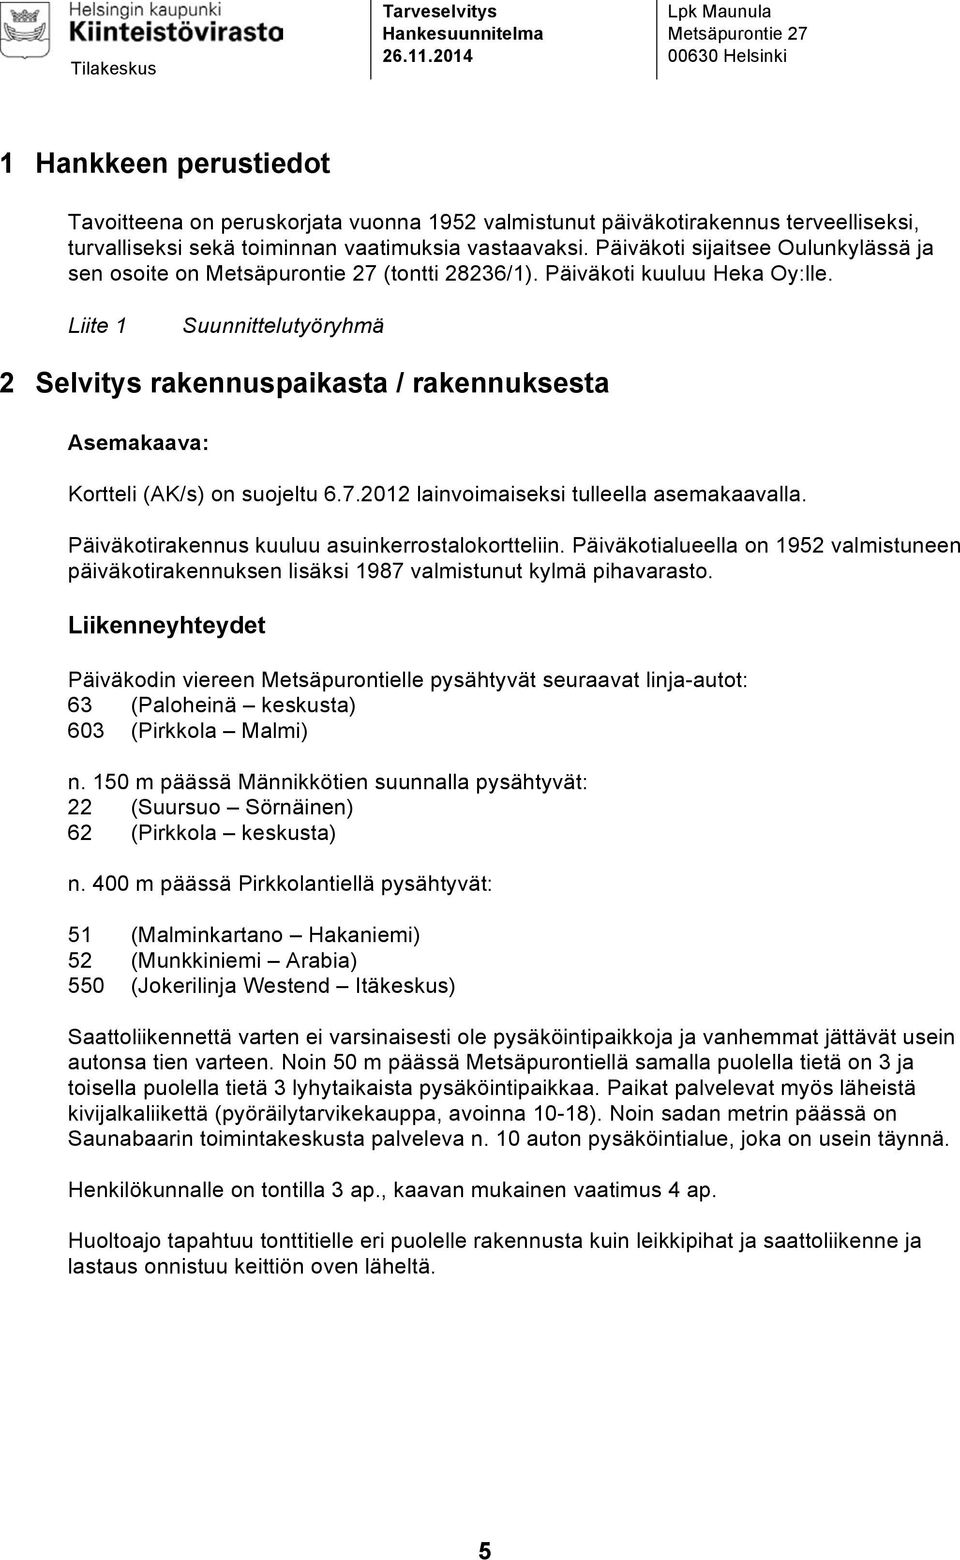 vastaavaksi. Päiväkoti sijaitsee Oulunkylässä ja sen osoite on Metsäpurontie 27 (tontti 28236/1). Päiväkoti kuuluu Heka Oy:lle.